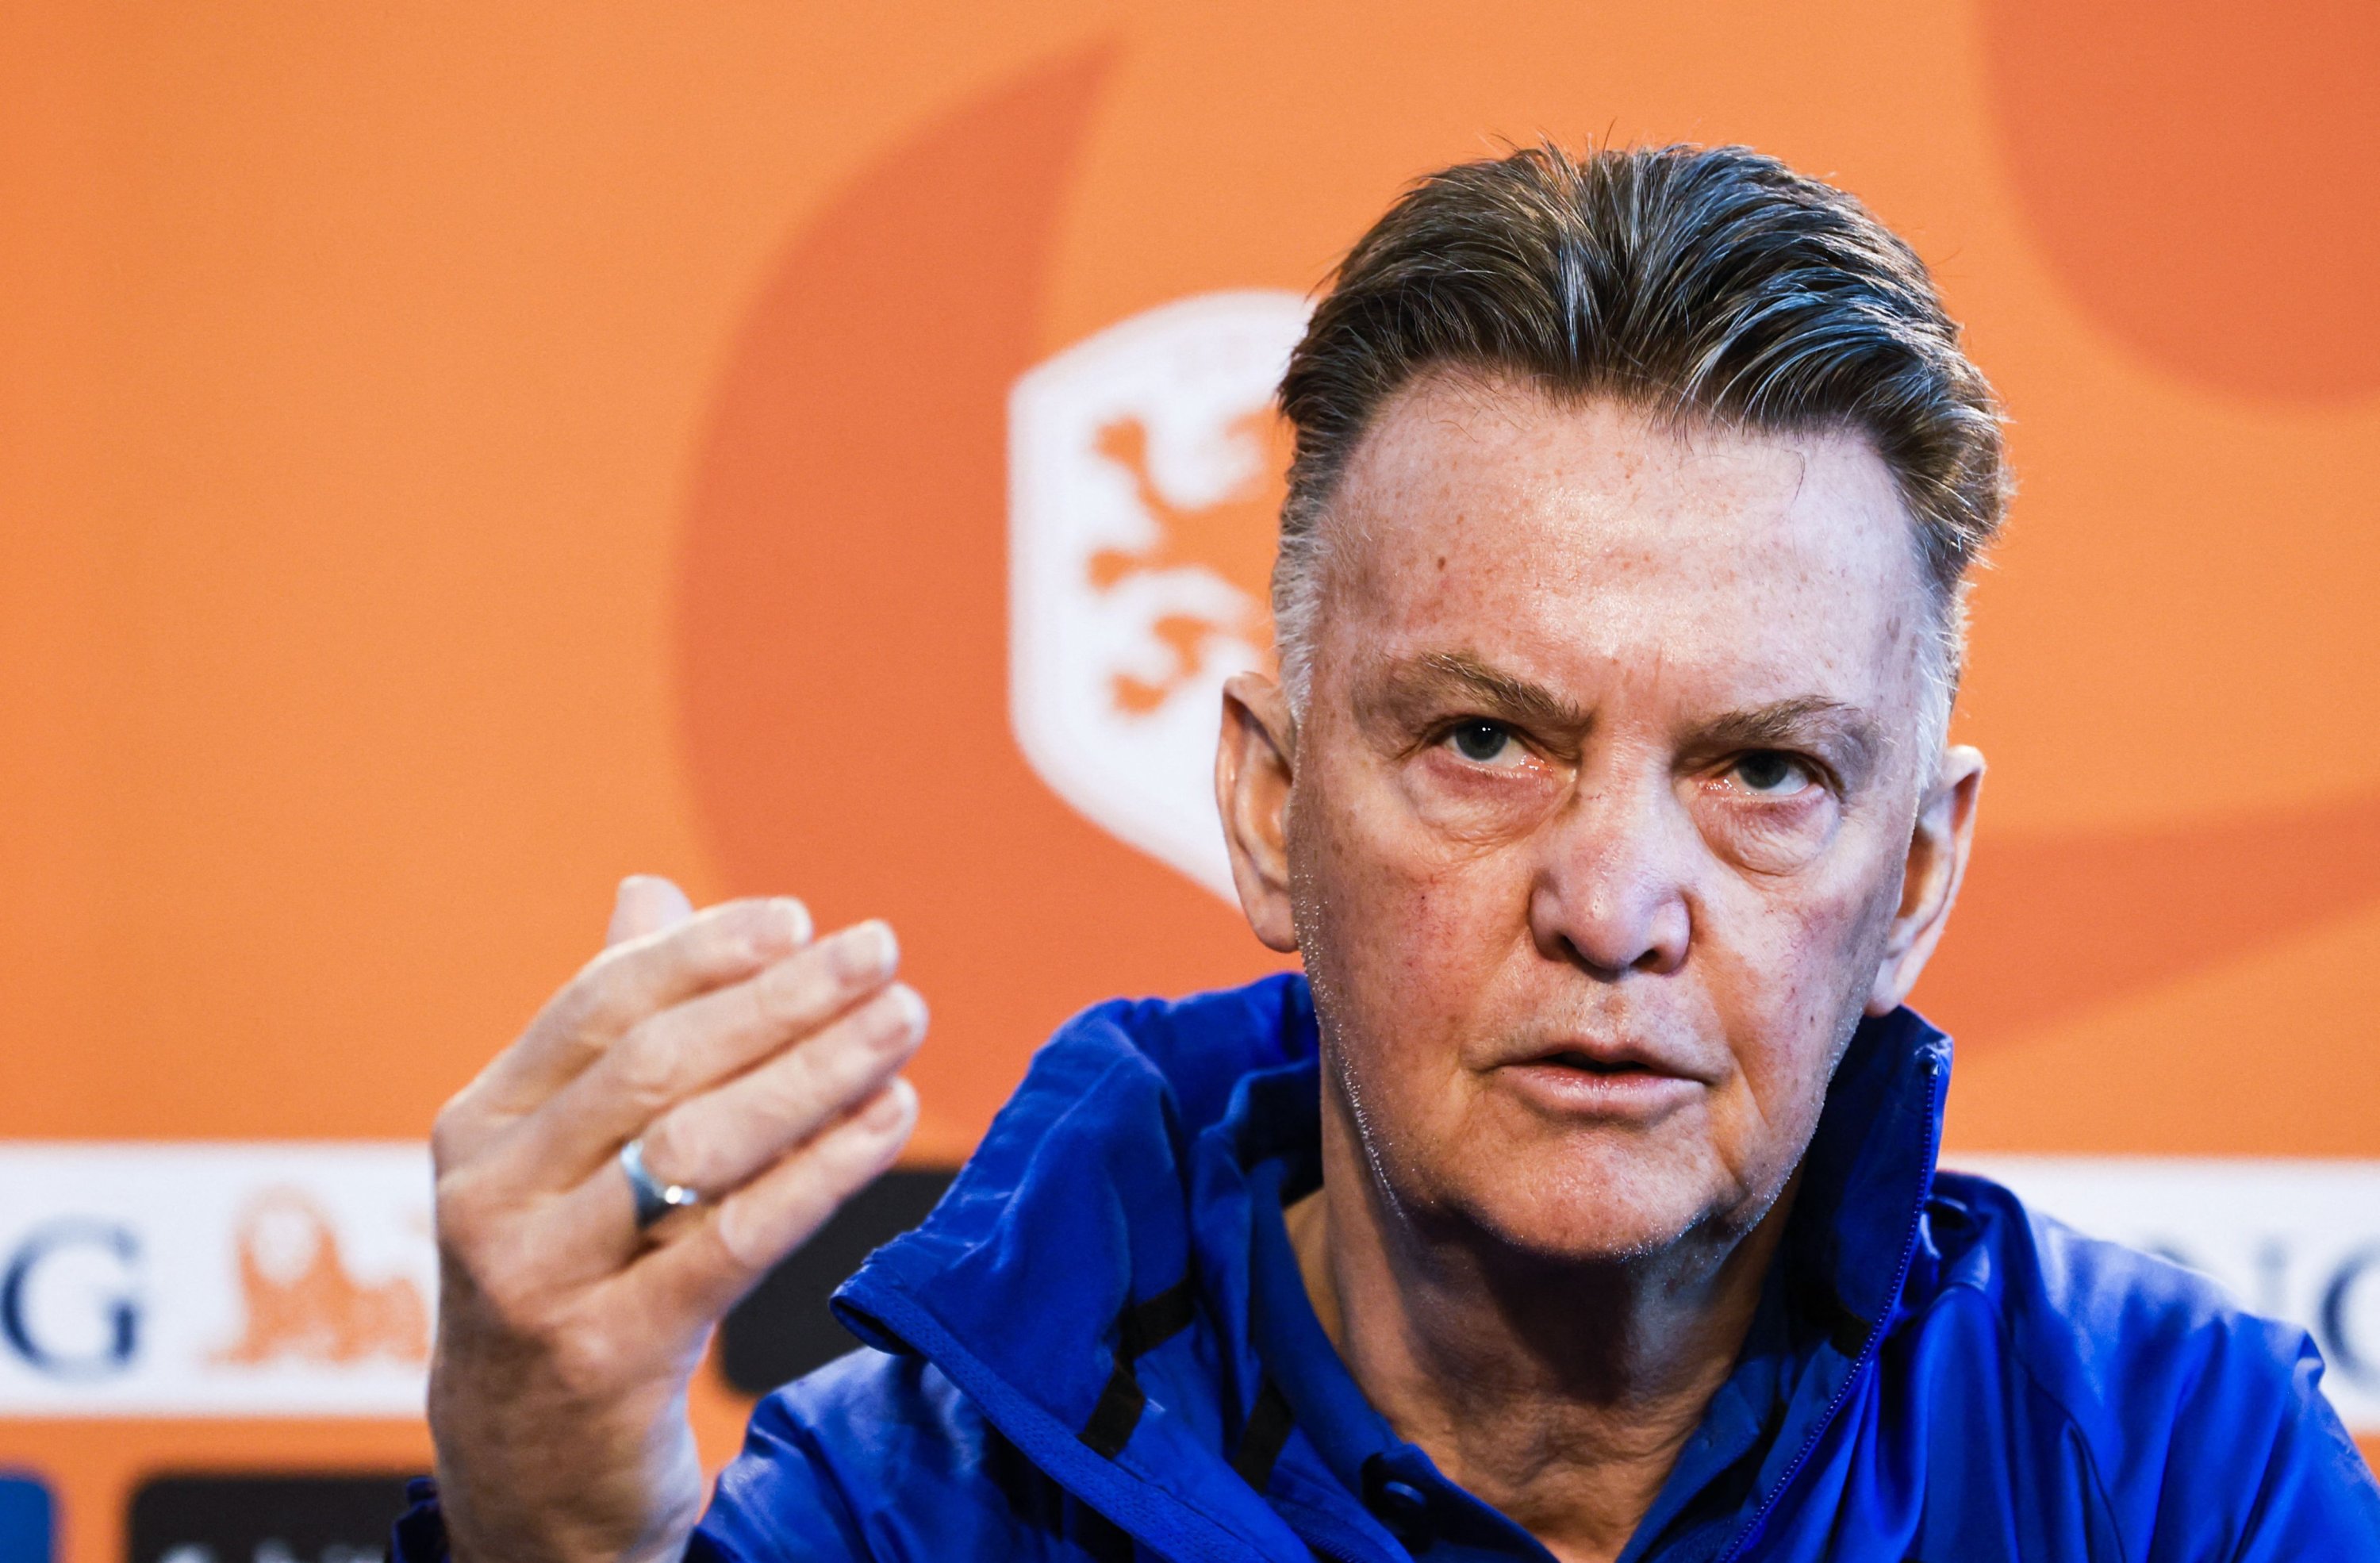 Dutch nat'l team coach Louis van Gaal confirms beating cancer